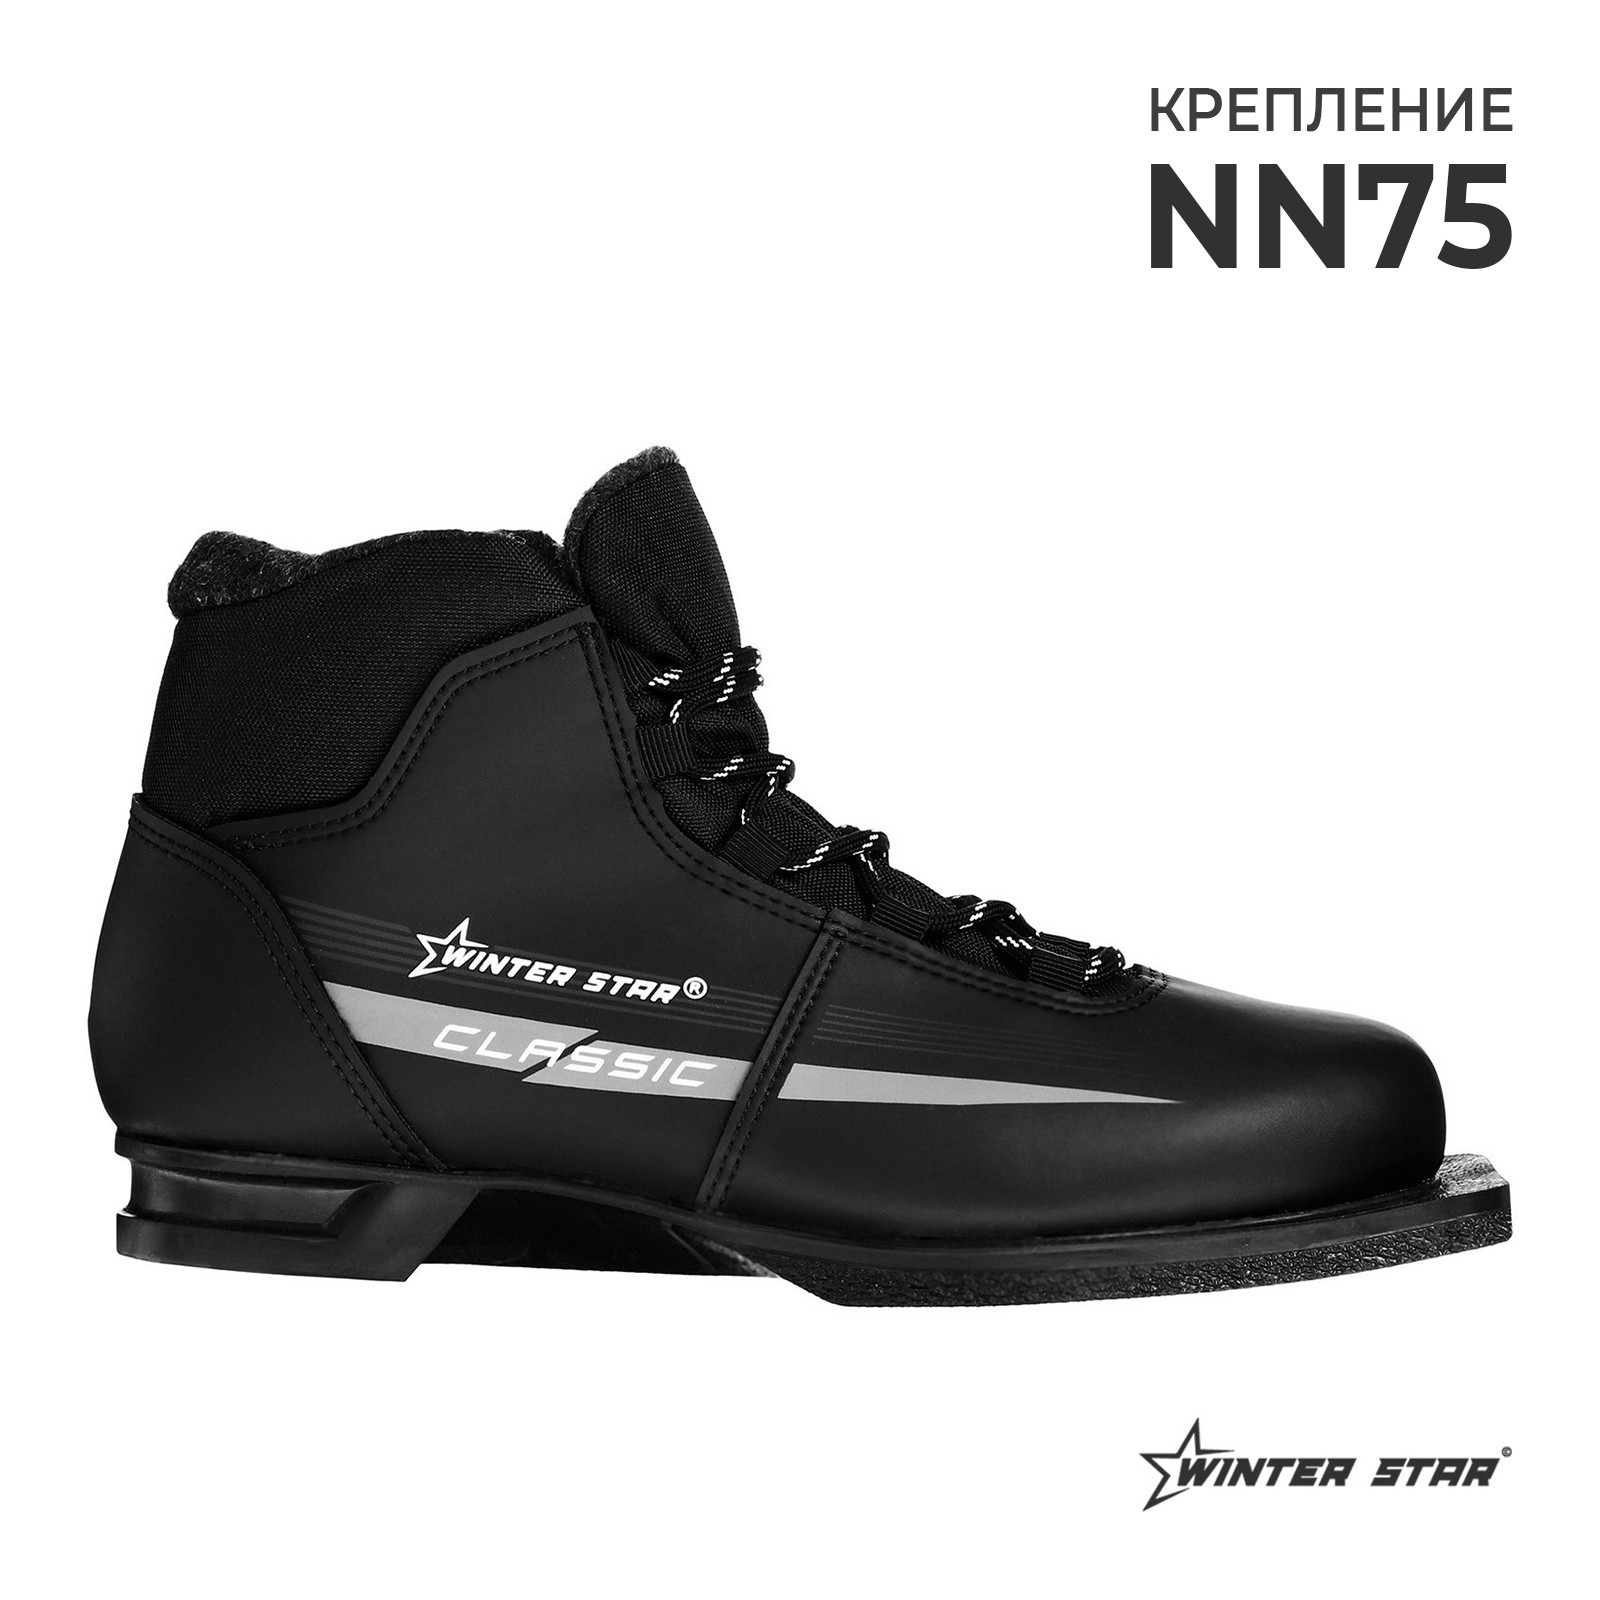 Ботинки лыжные Winter Star classic, NN75, р. 32, цвет черный, лого серый